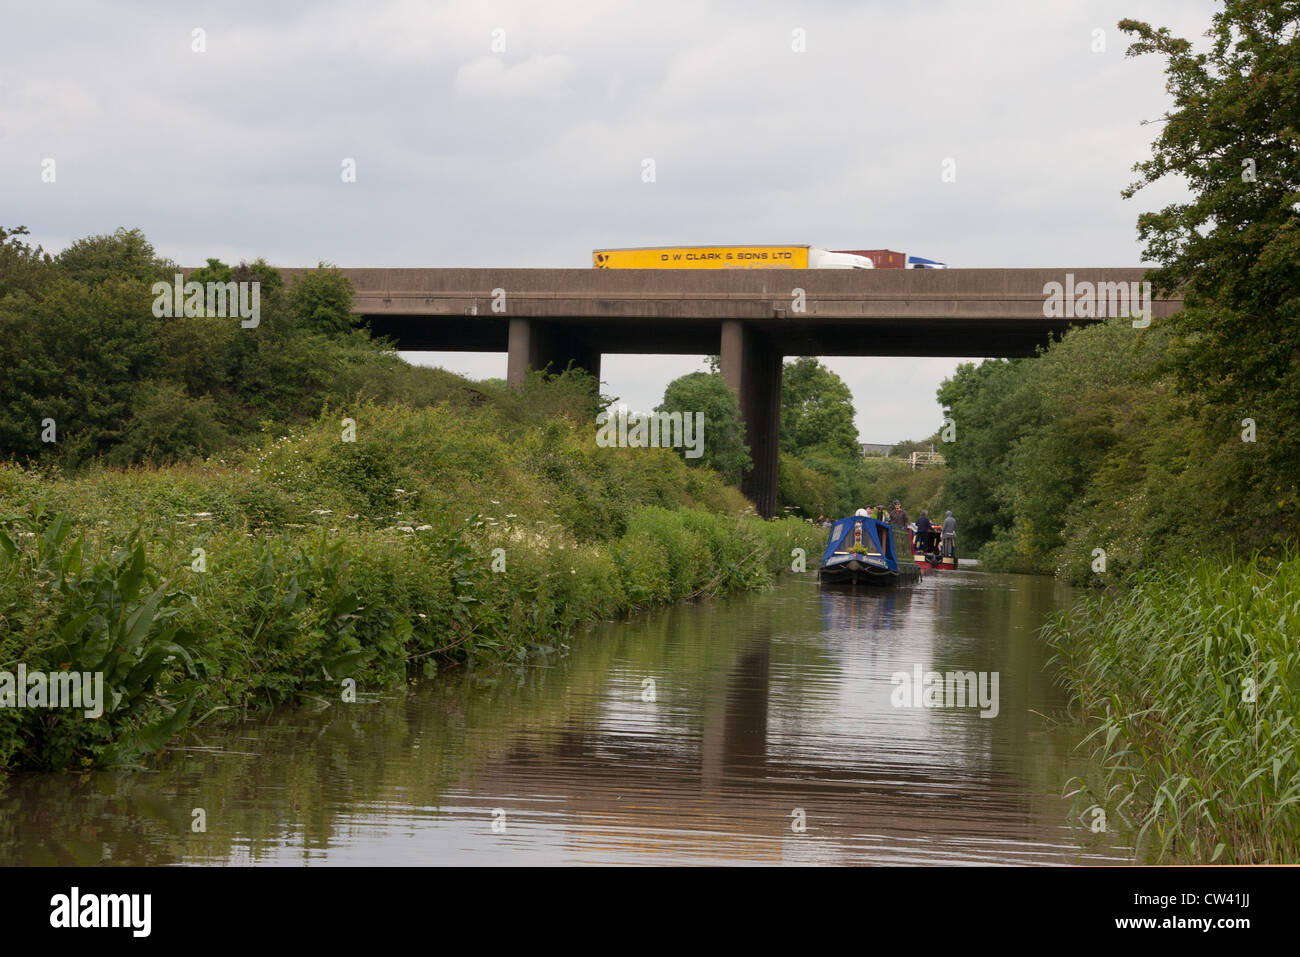 Attraverso il canale di Oxford, l'autostrada M6 al di sopra del ponte 25 con un camion di DW Clark & Sons Ltd è visto. Foto Stock